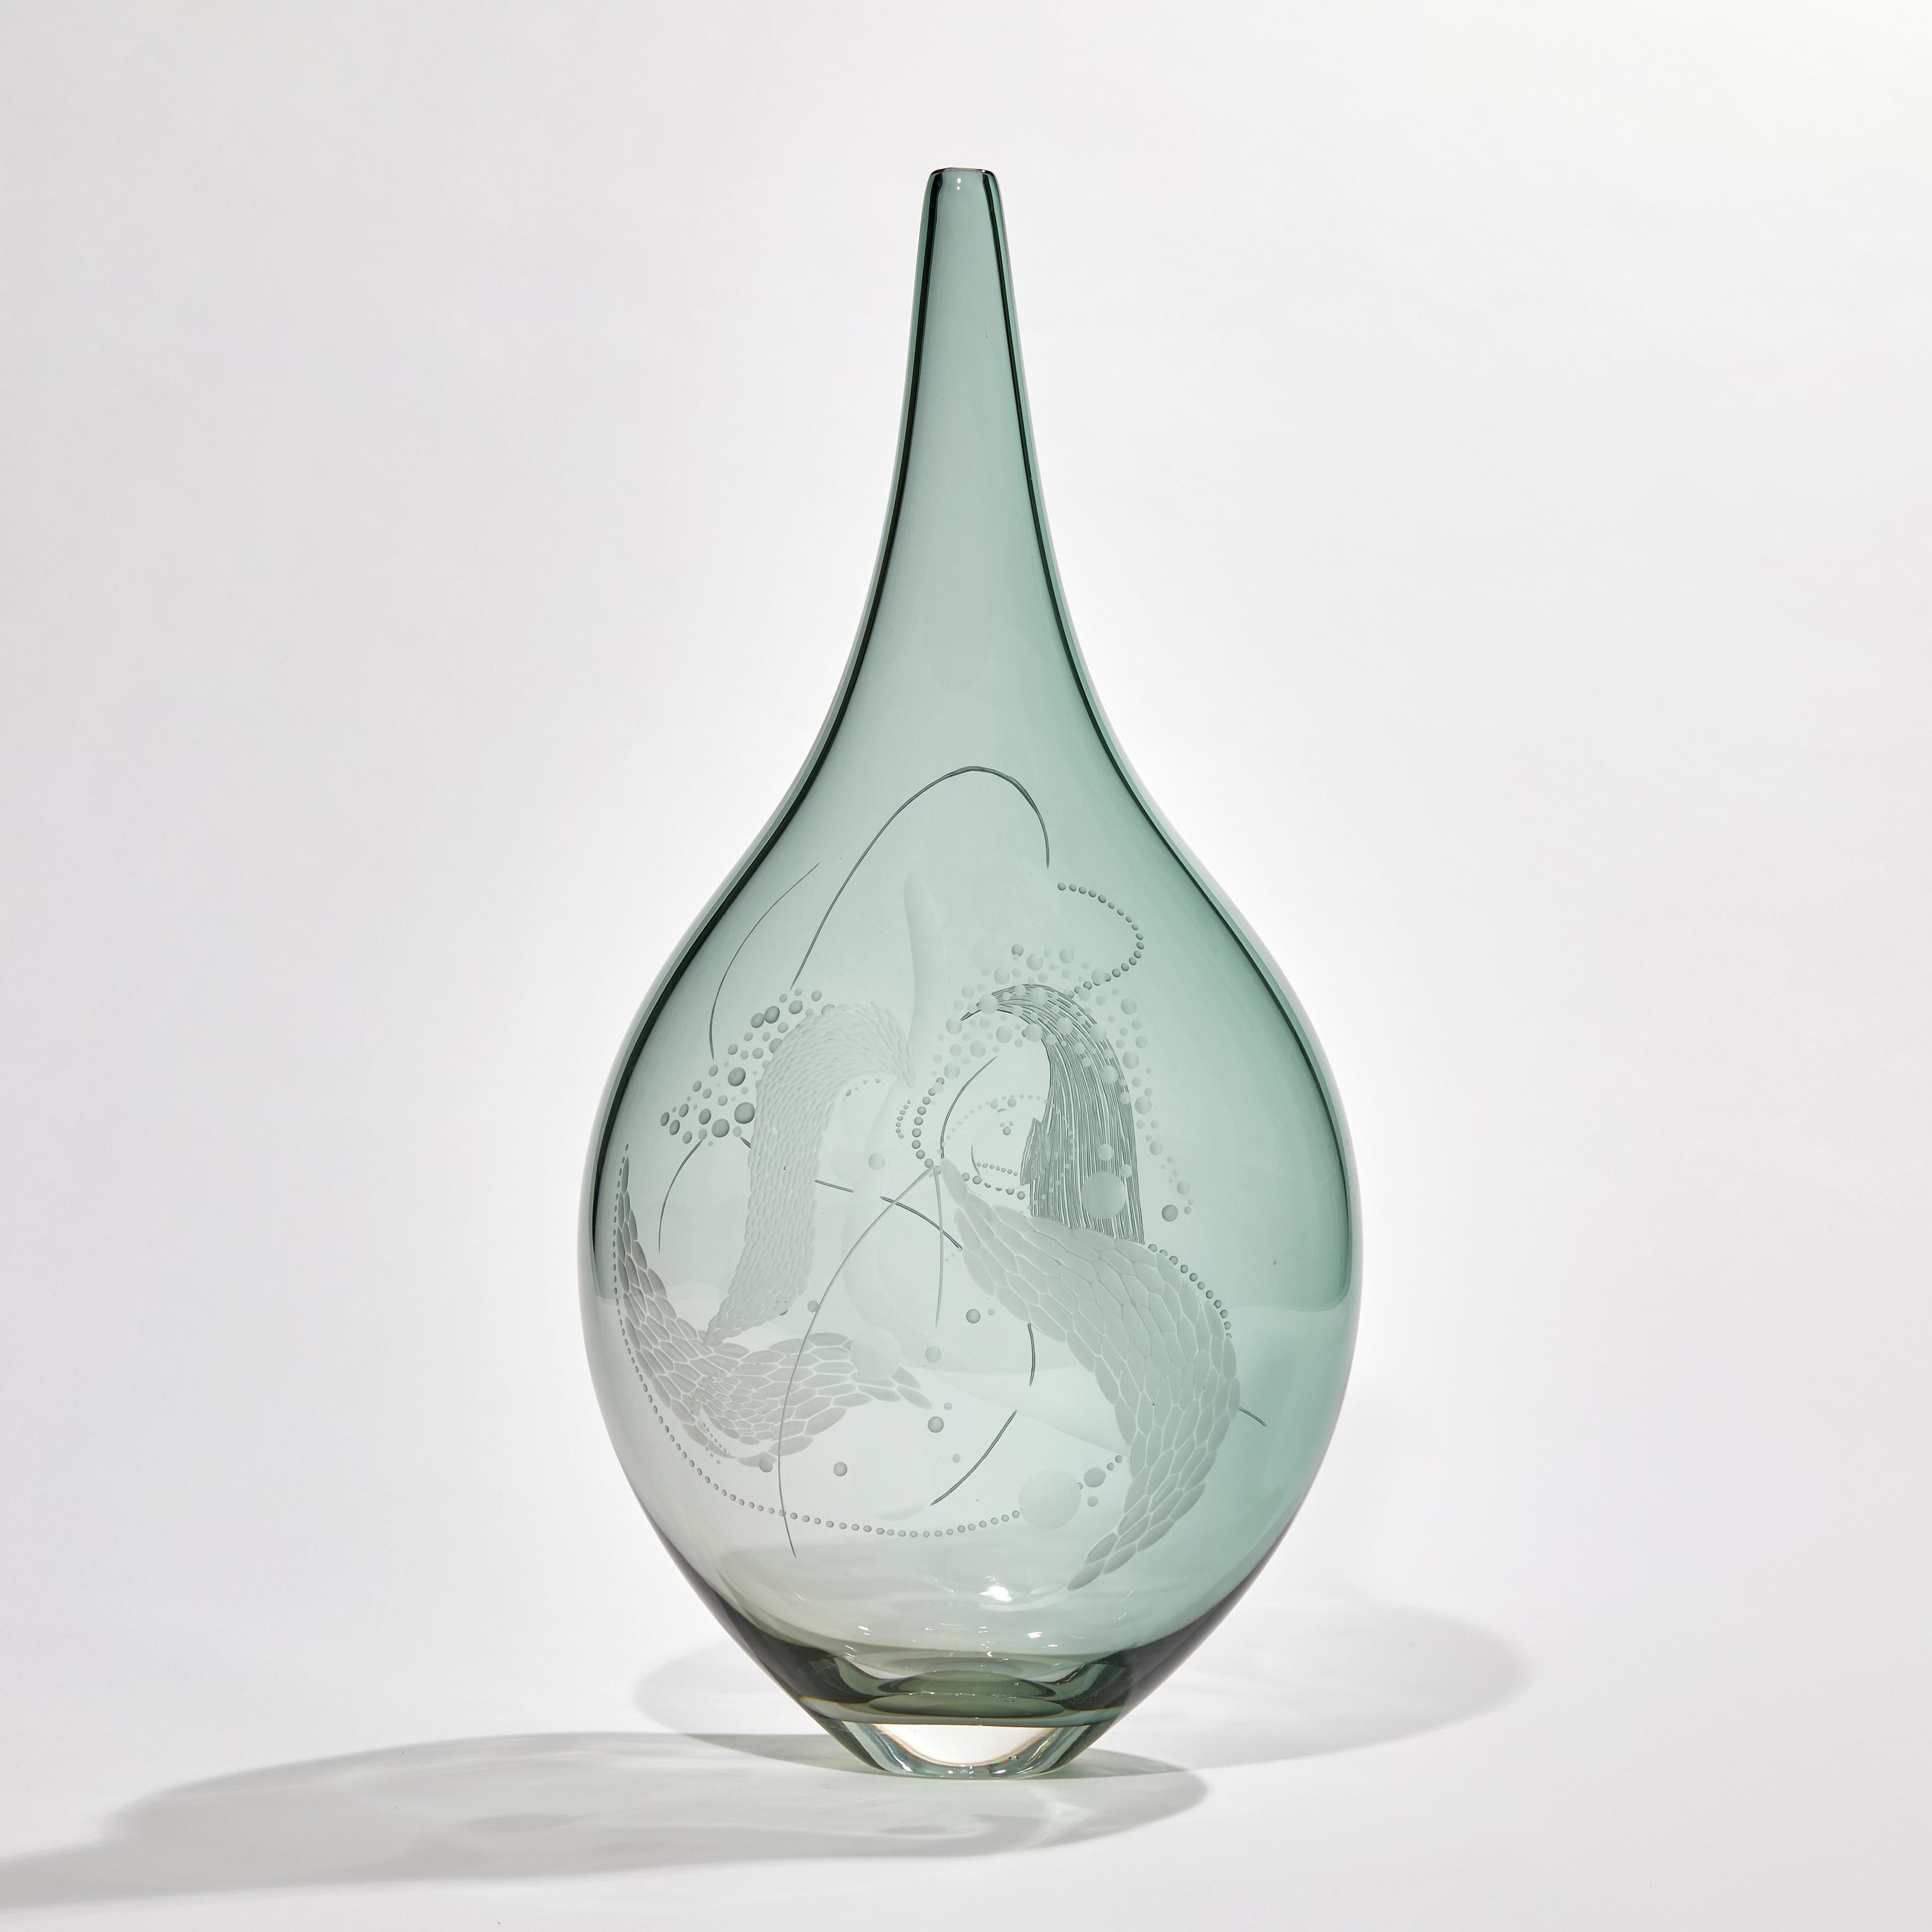 British Mariniere Vase II, Unique Celadon Engraved Glass Vessel by Heather Gillespie